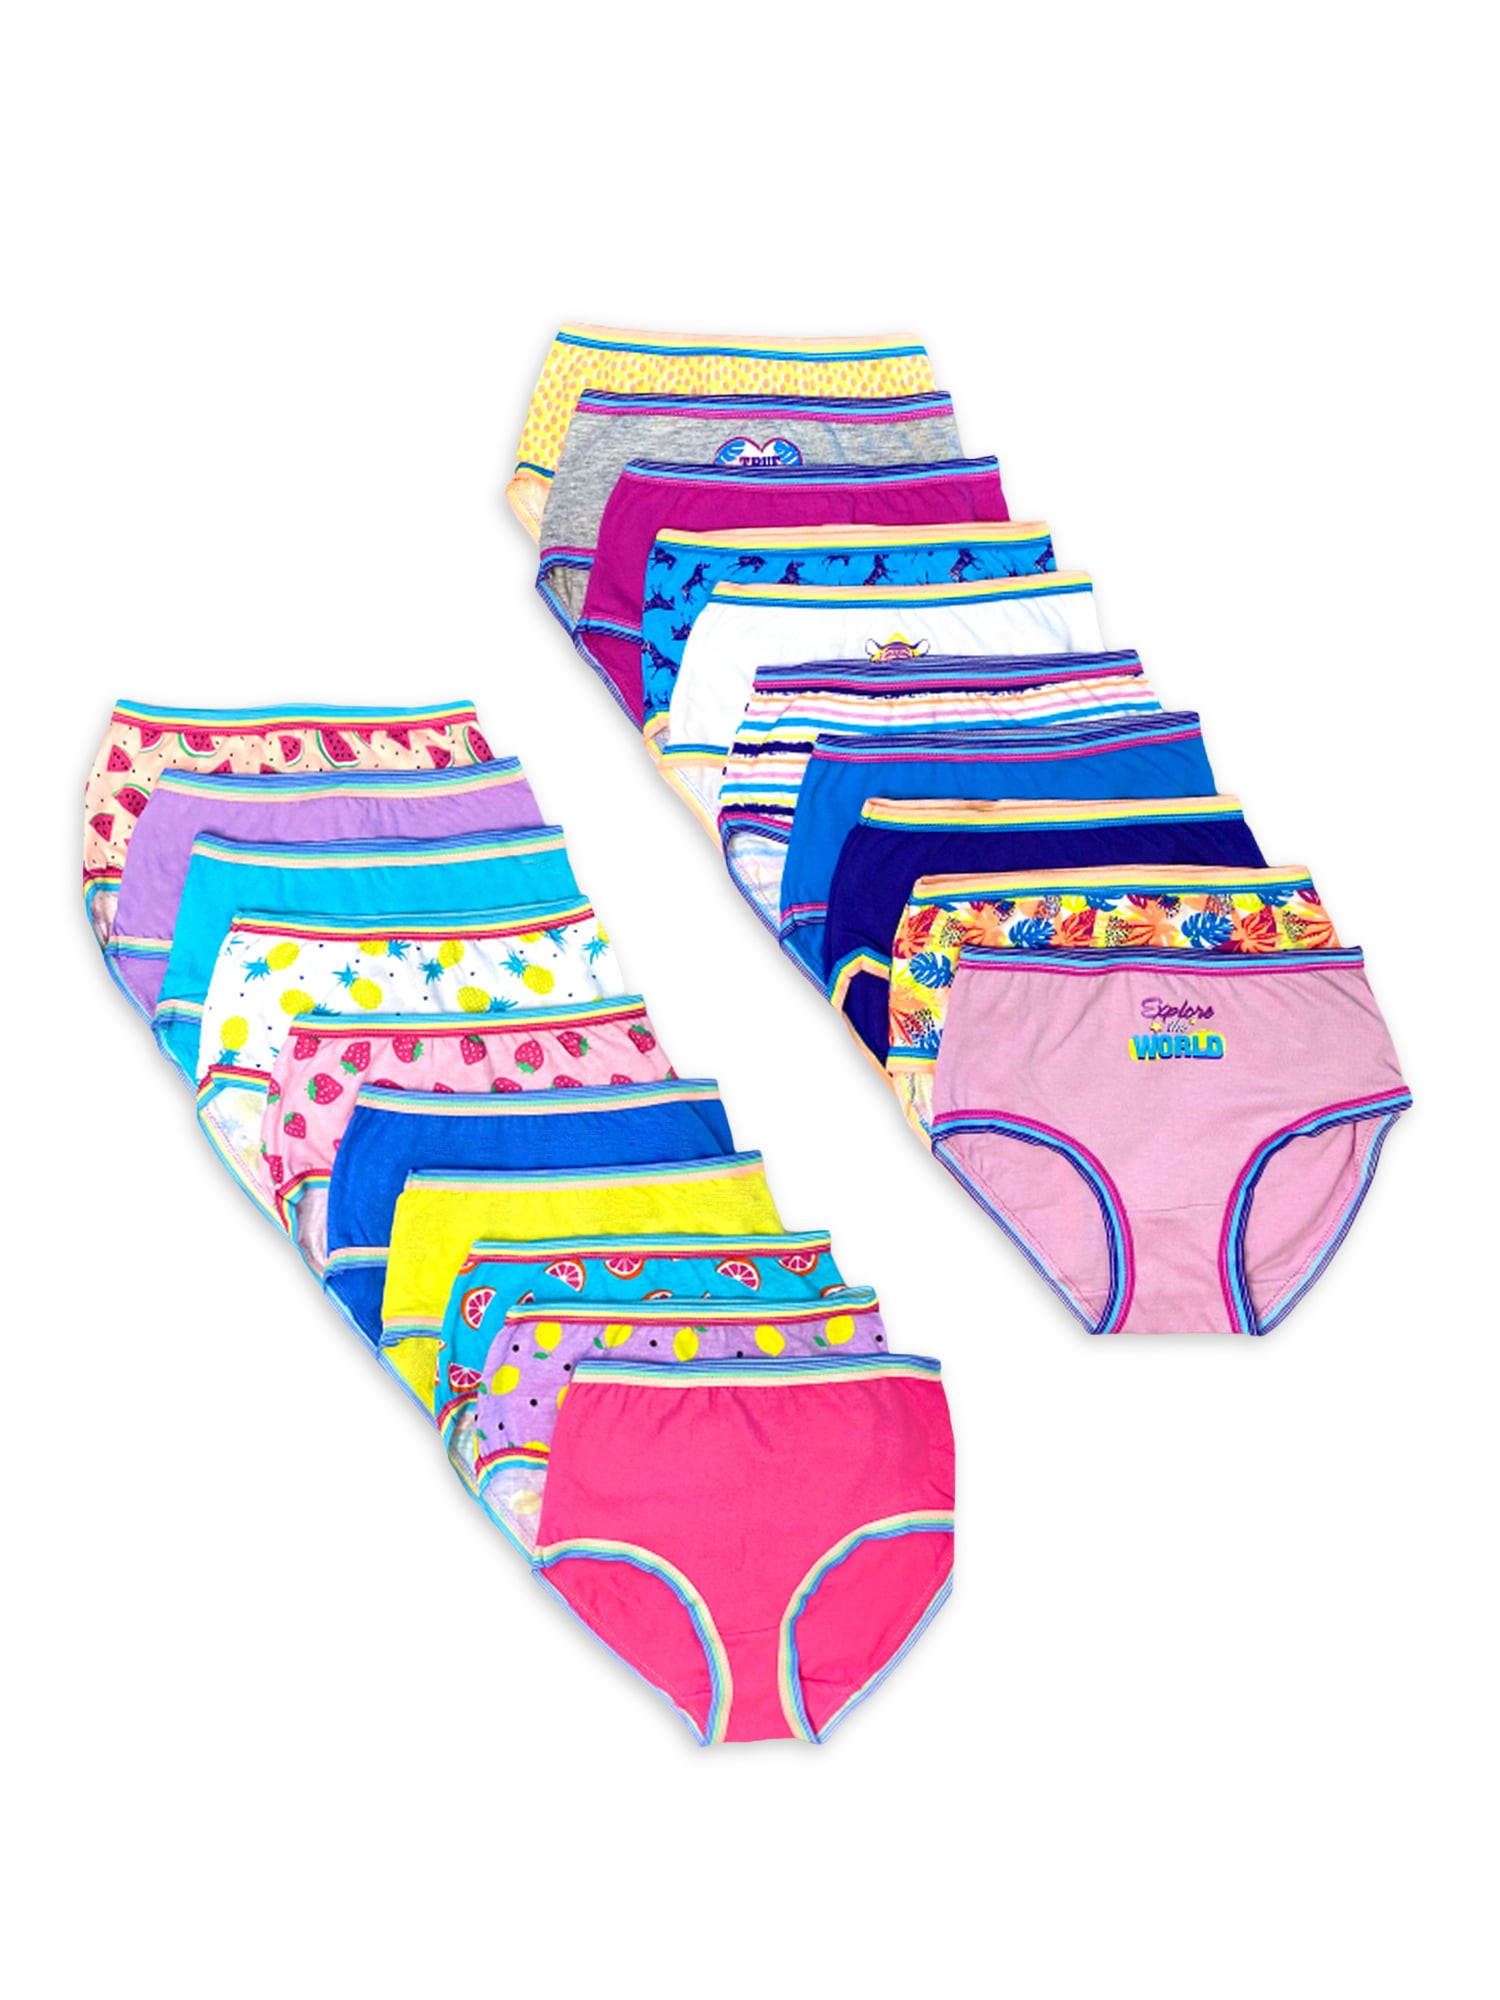 Wonder Nation Girls Brief Underwear, 10-Pack, Sizes 4-18 & Plus